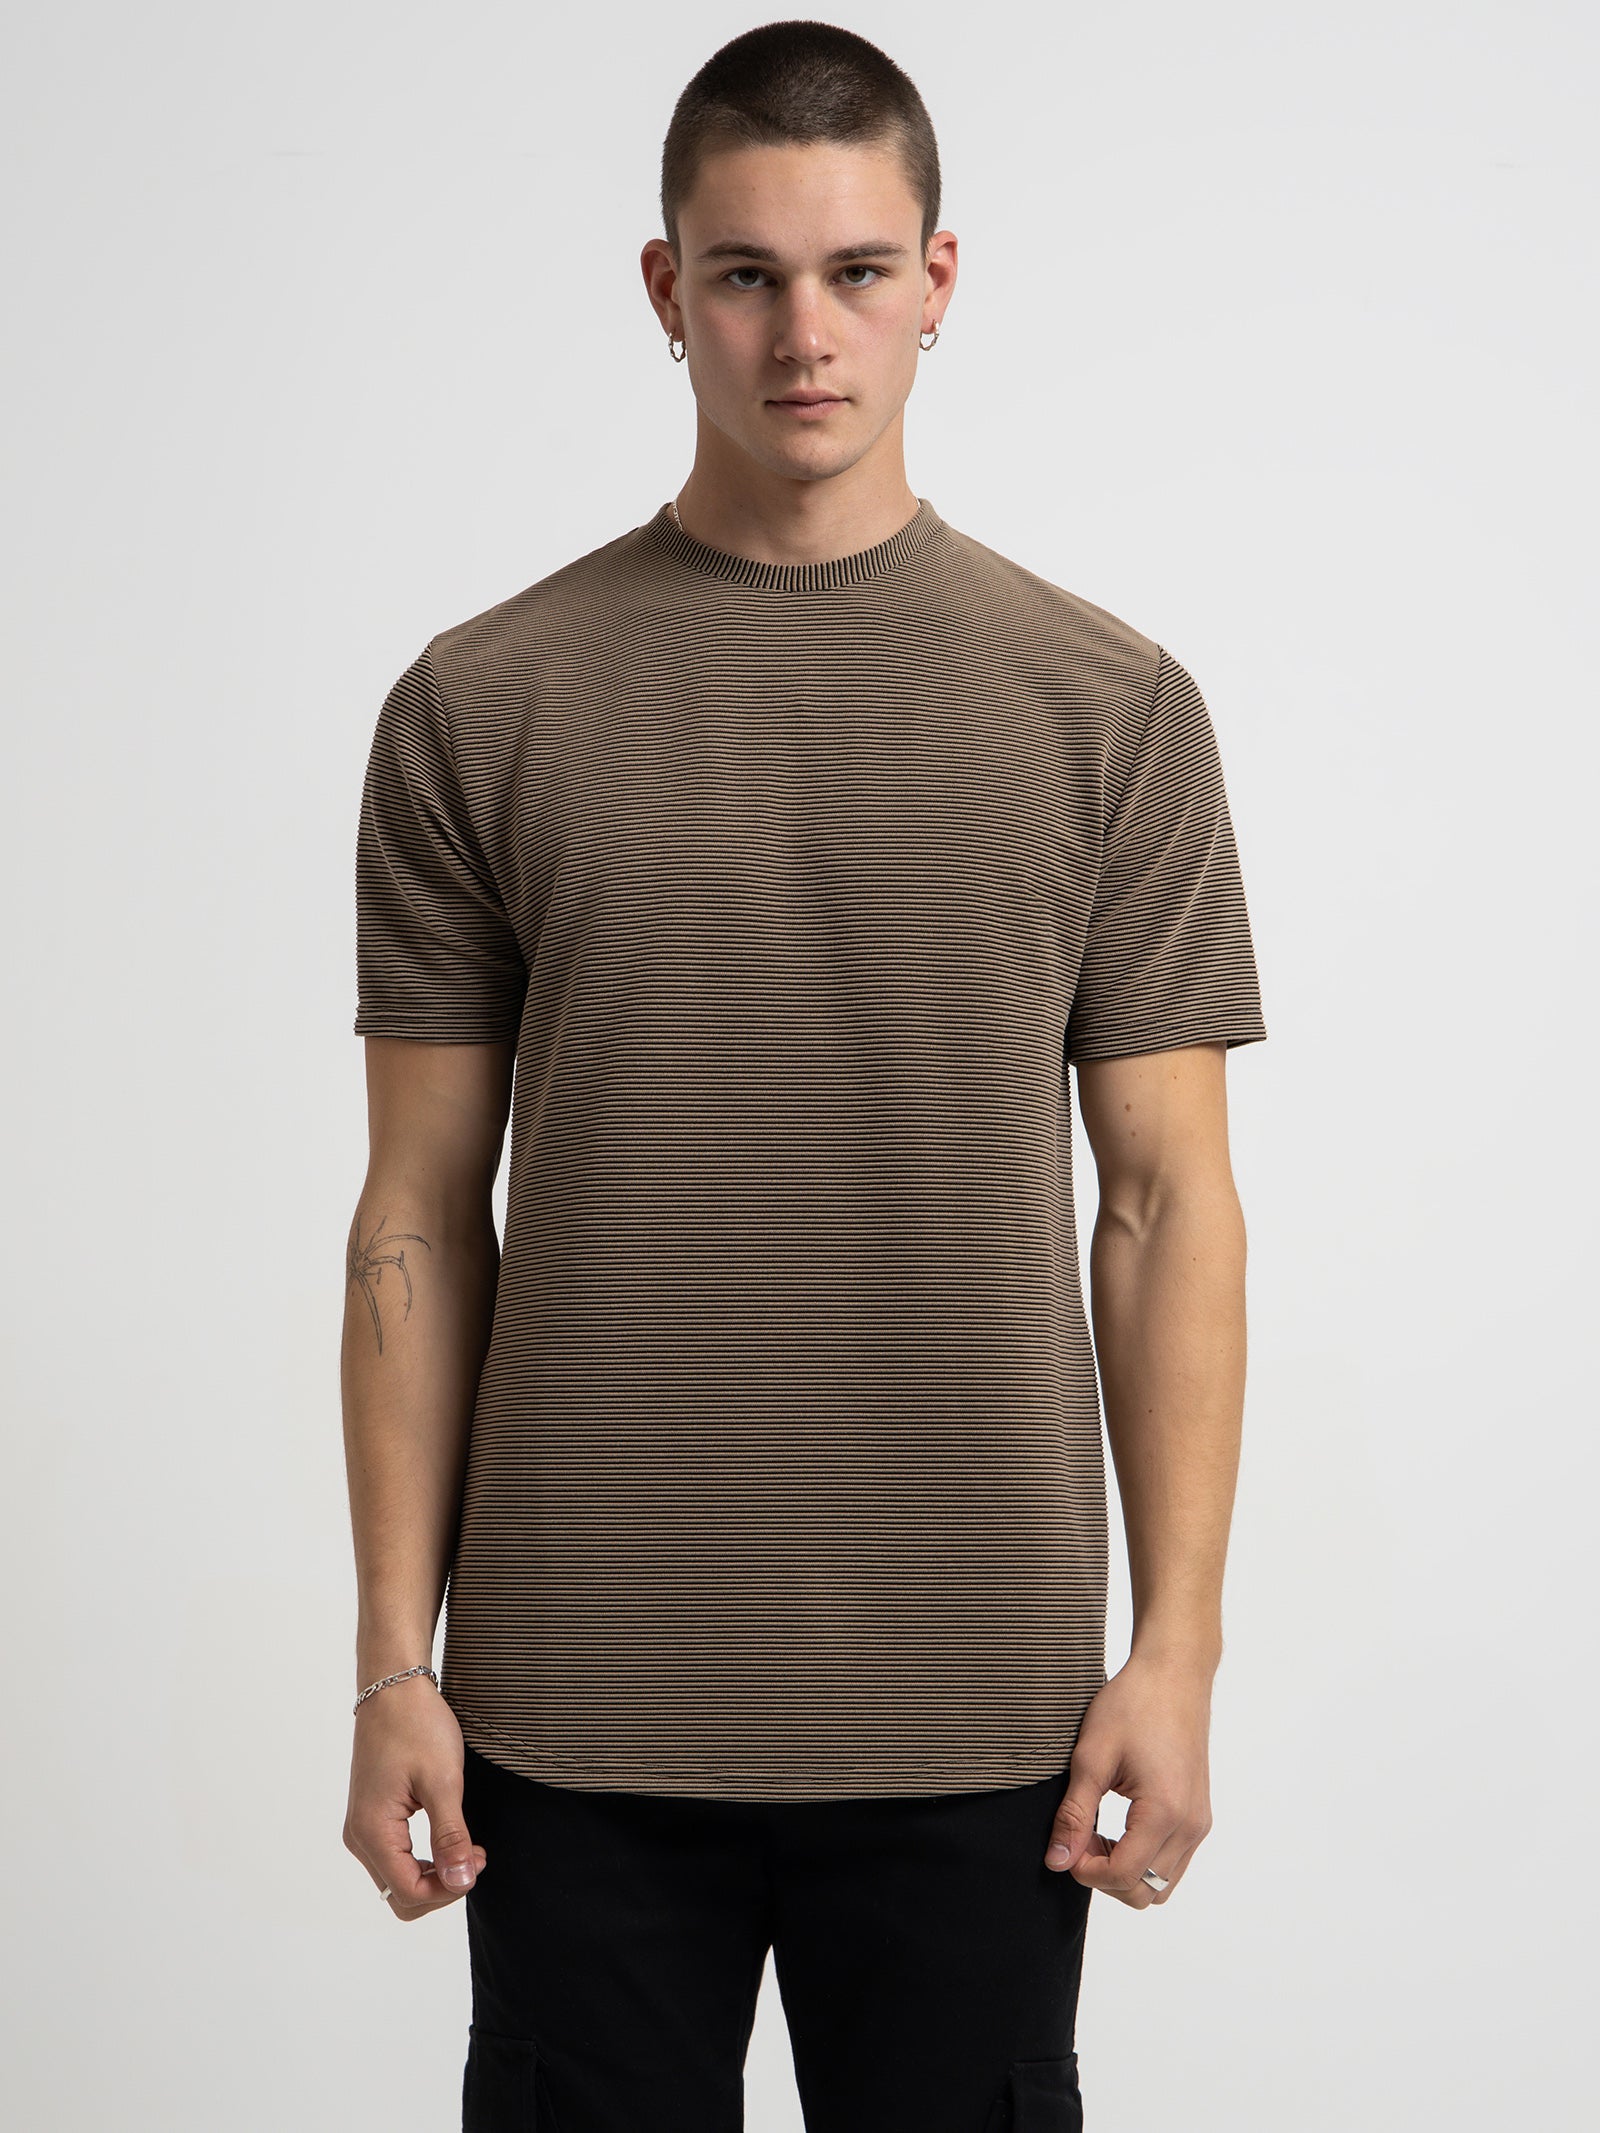 Roxford T-Shirt in Sepia